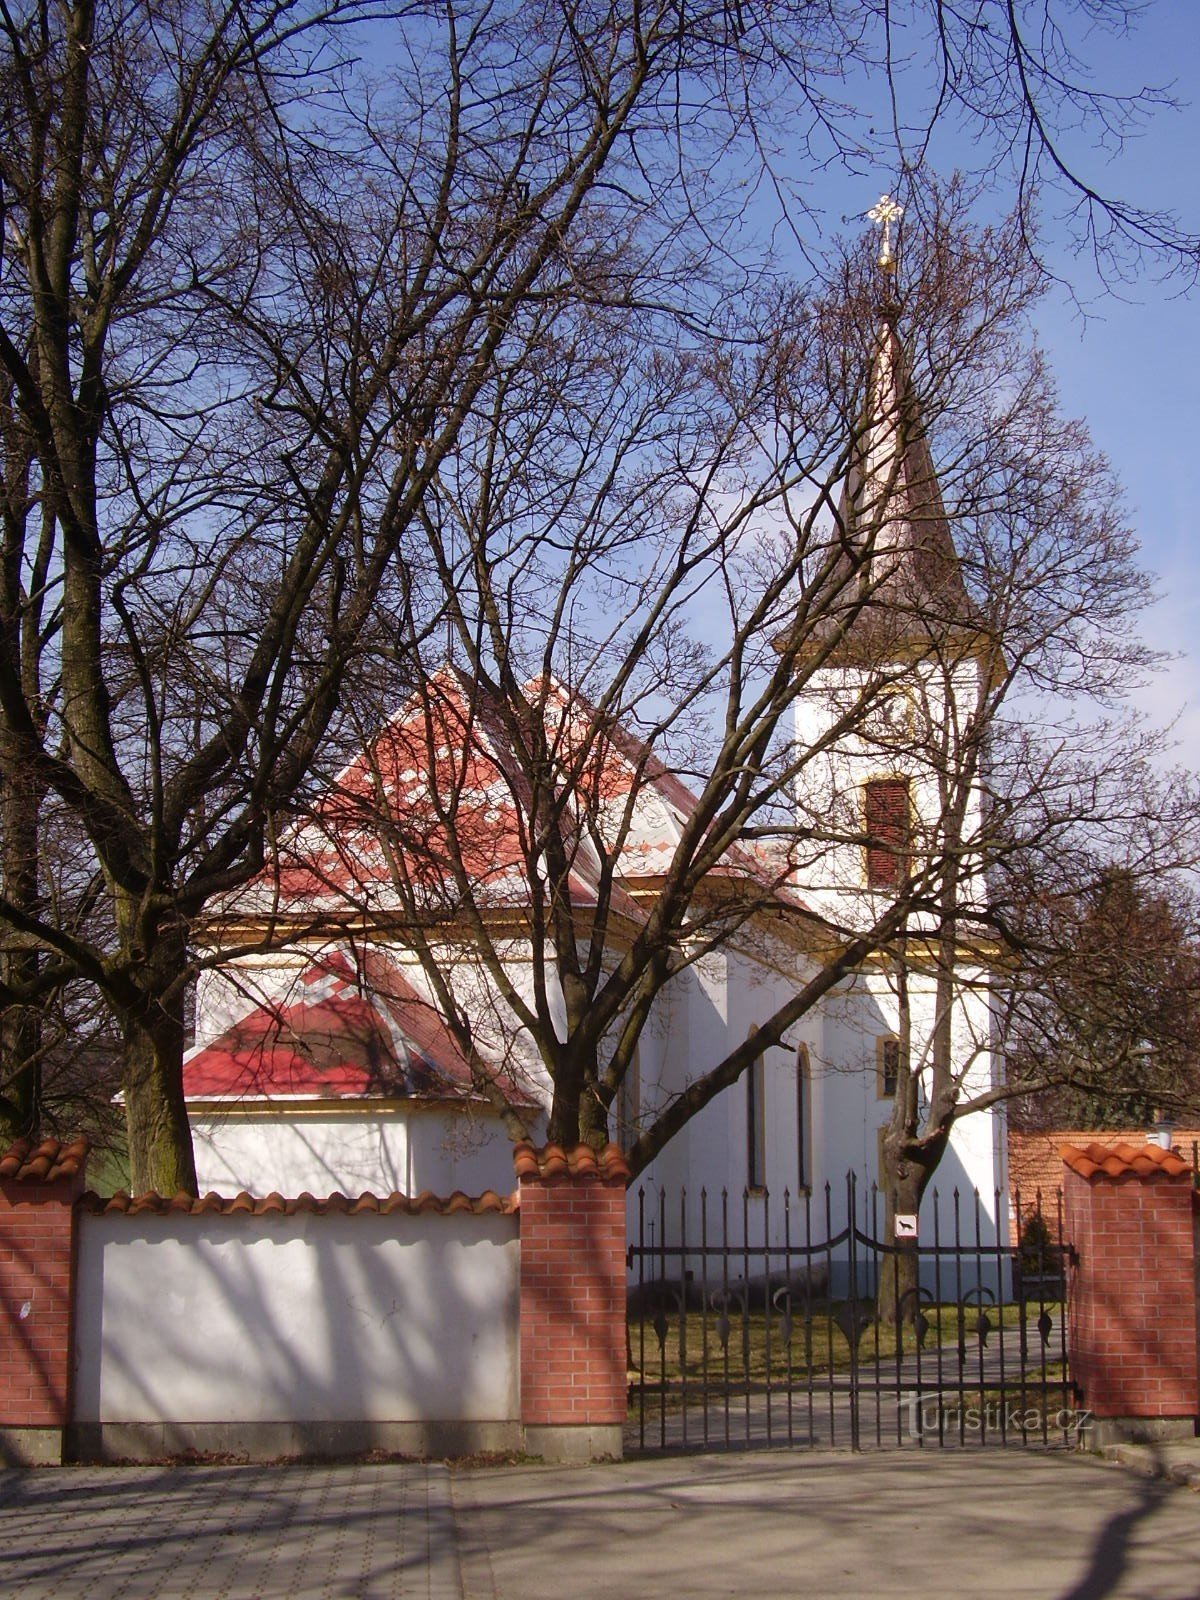 Église de St. Cecilie à Lipůvka